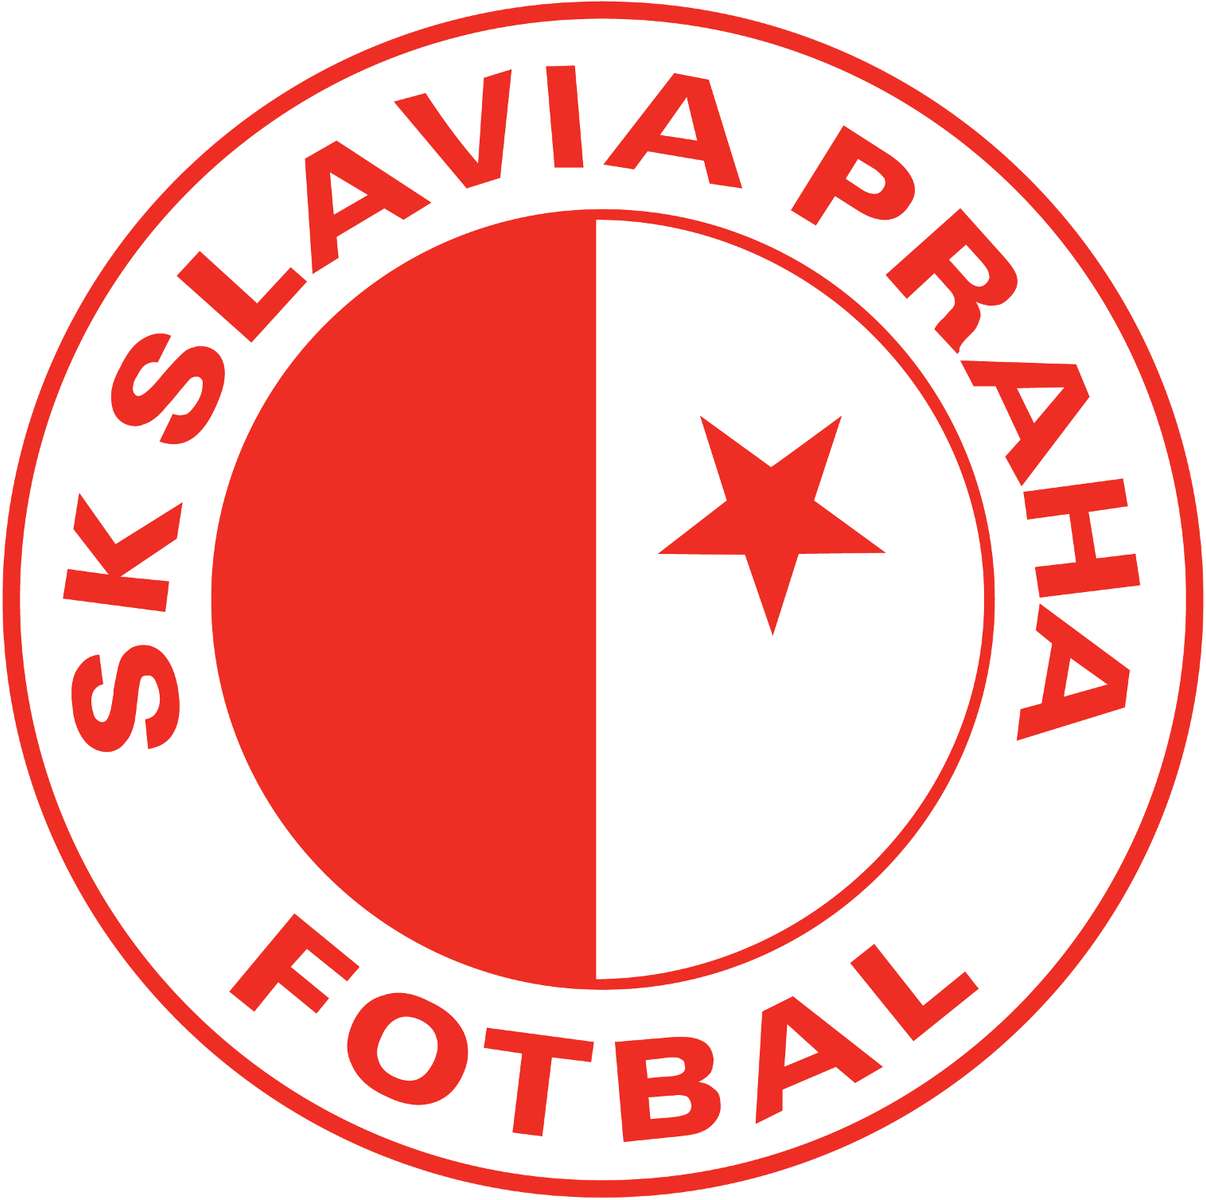 Slávia Praha Online-Puzzle